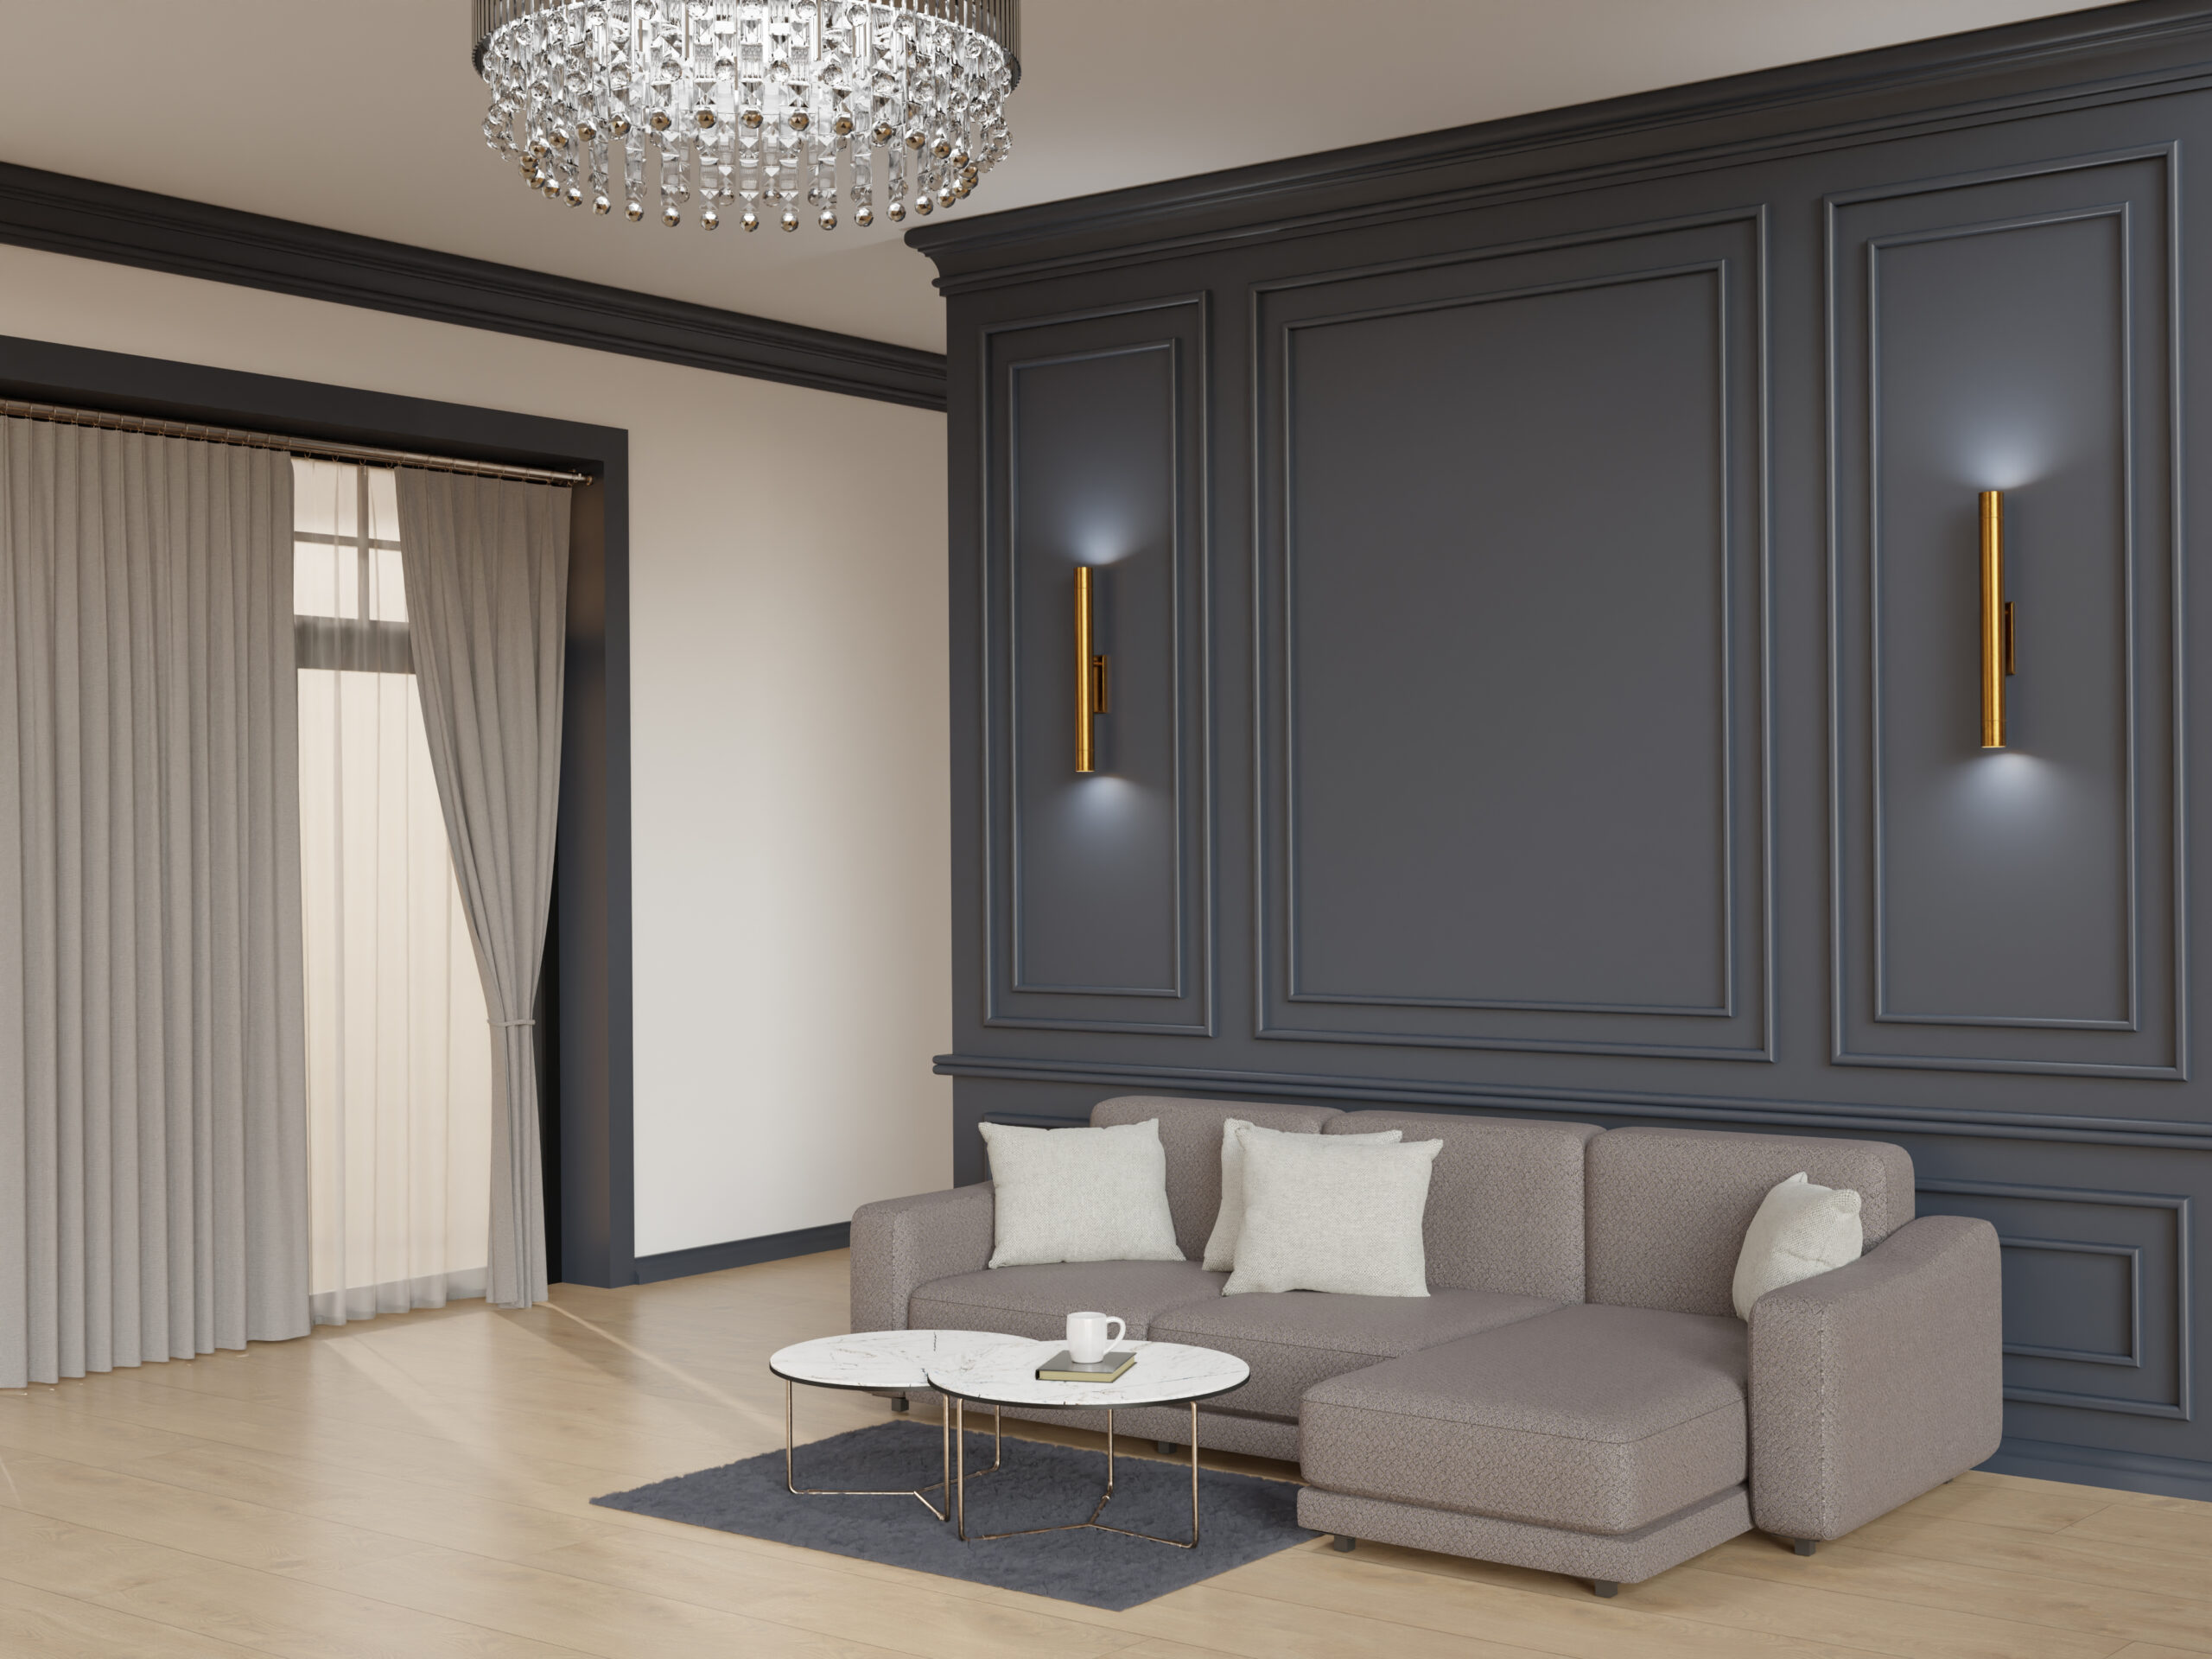 Using Metallic Laminate in Your Living Room Design